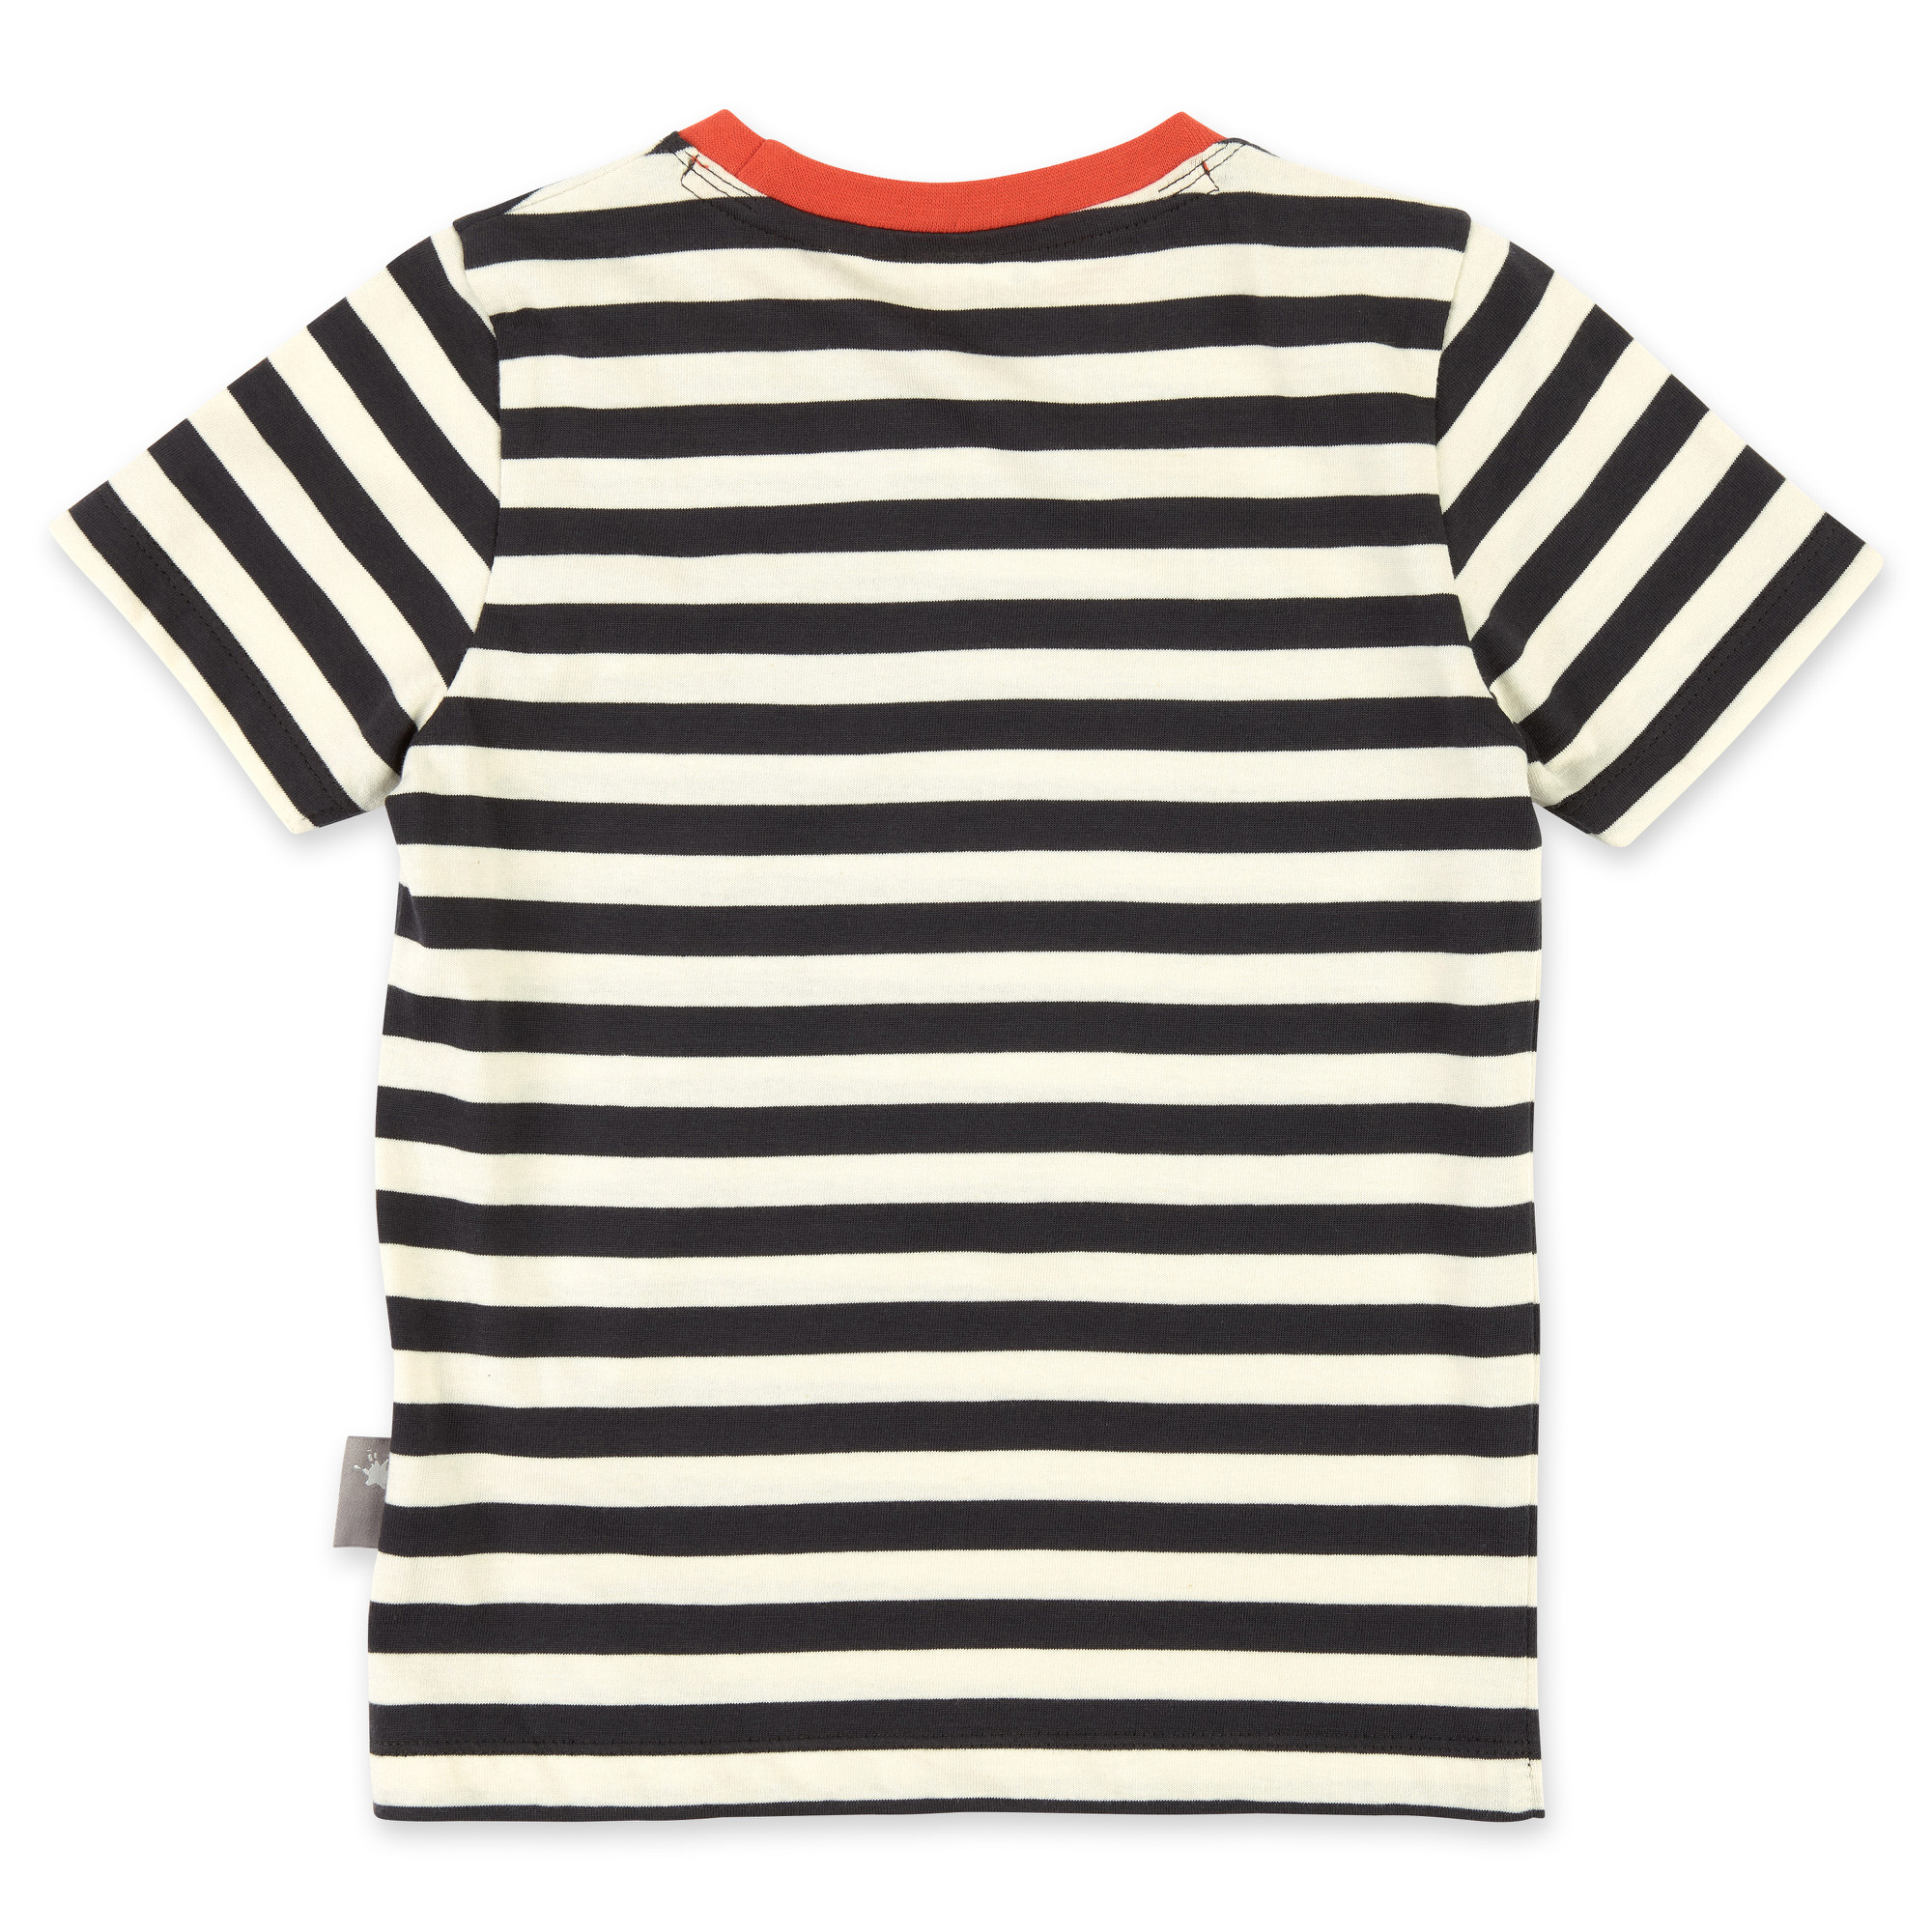 Kurzer Kinder Sommer Schlafanzug Bär, rot und schwarz-weiß geringelt